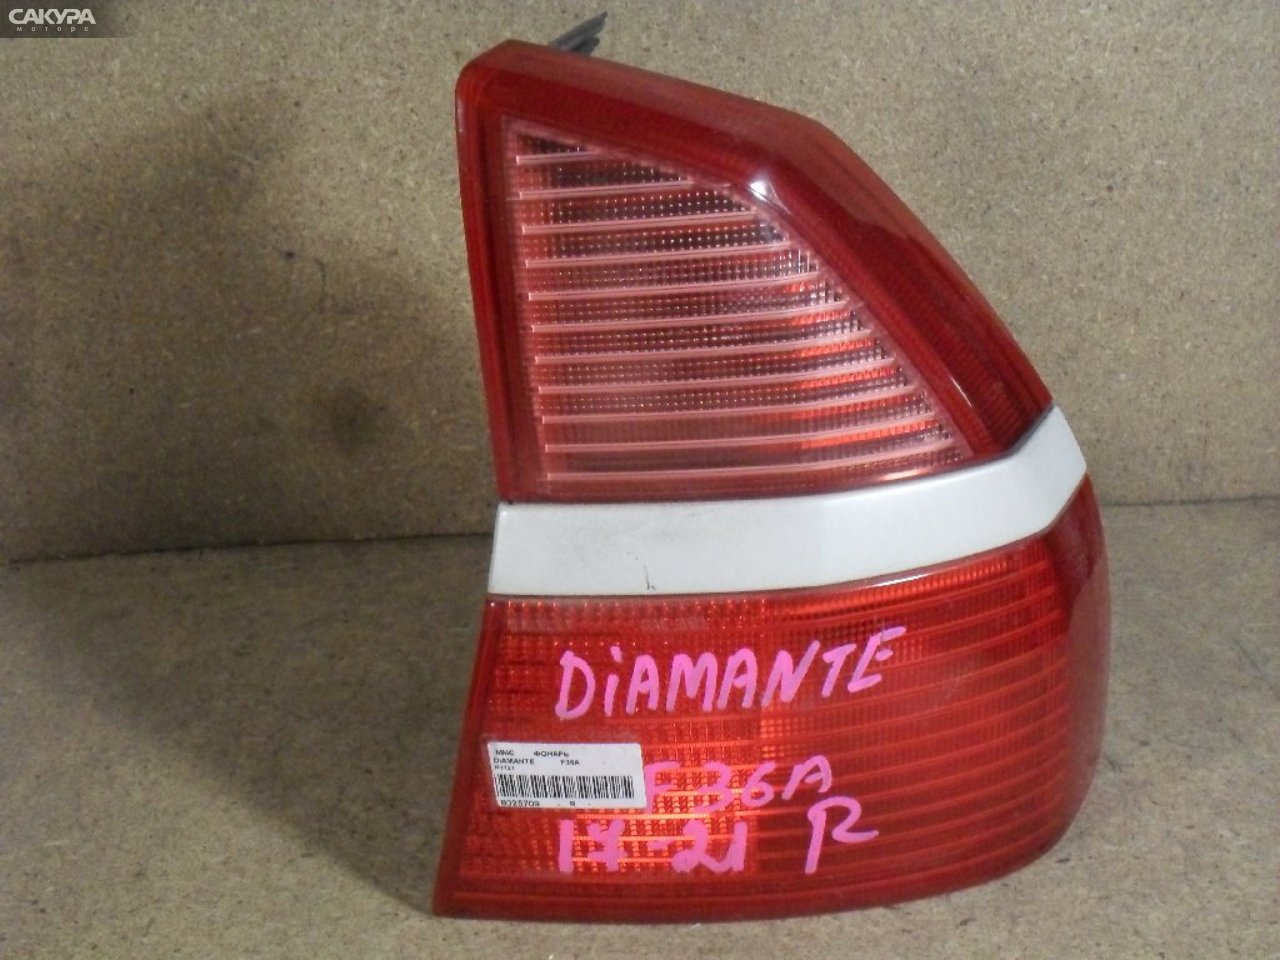 Фонарь стоп-сигнала правый Mitsubishi Diamante F36A R1721: купить в Сакура Абакан.